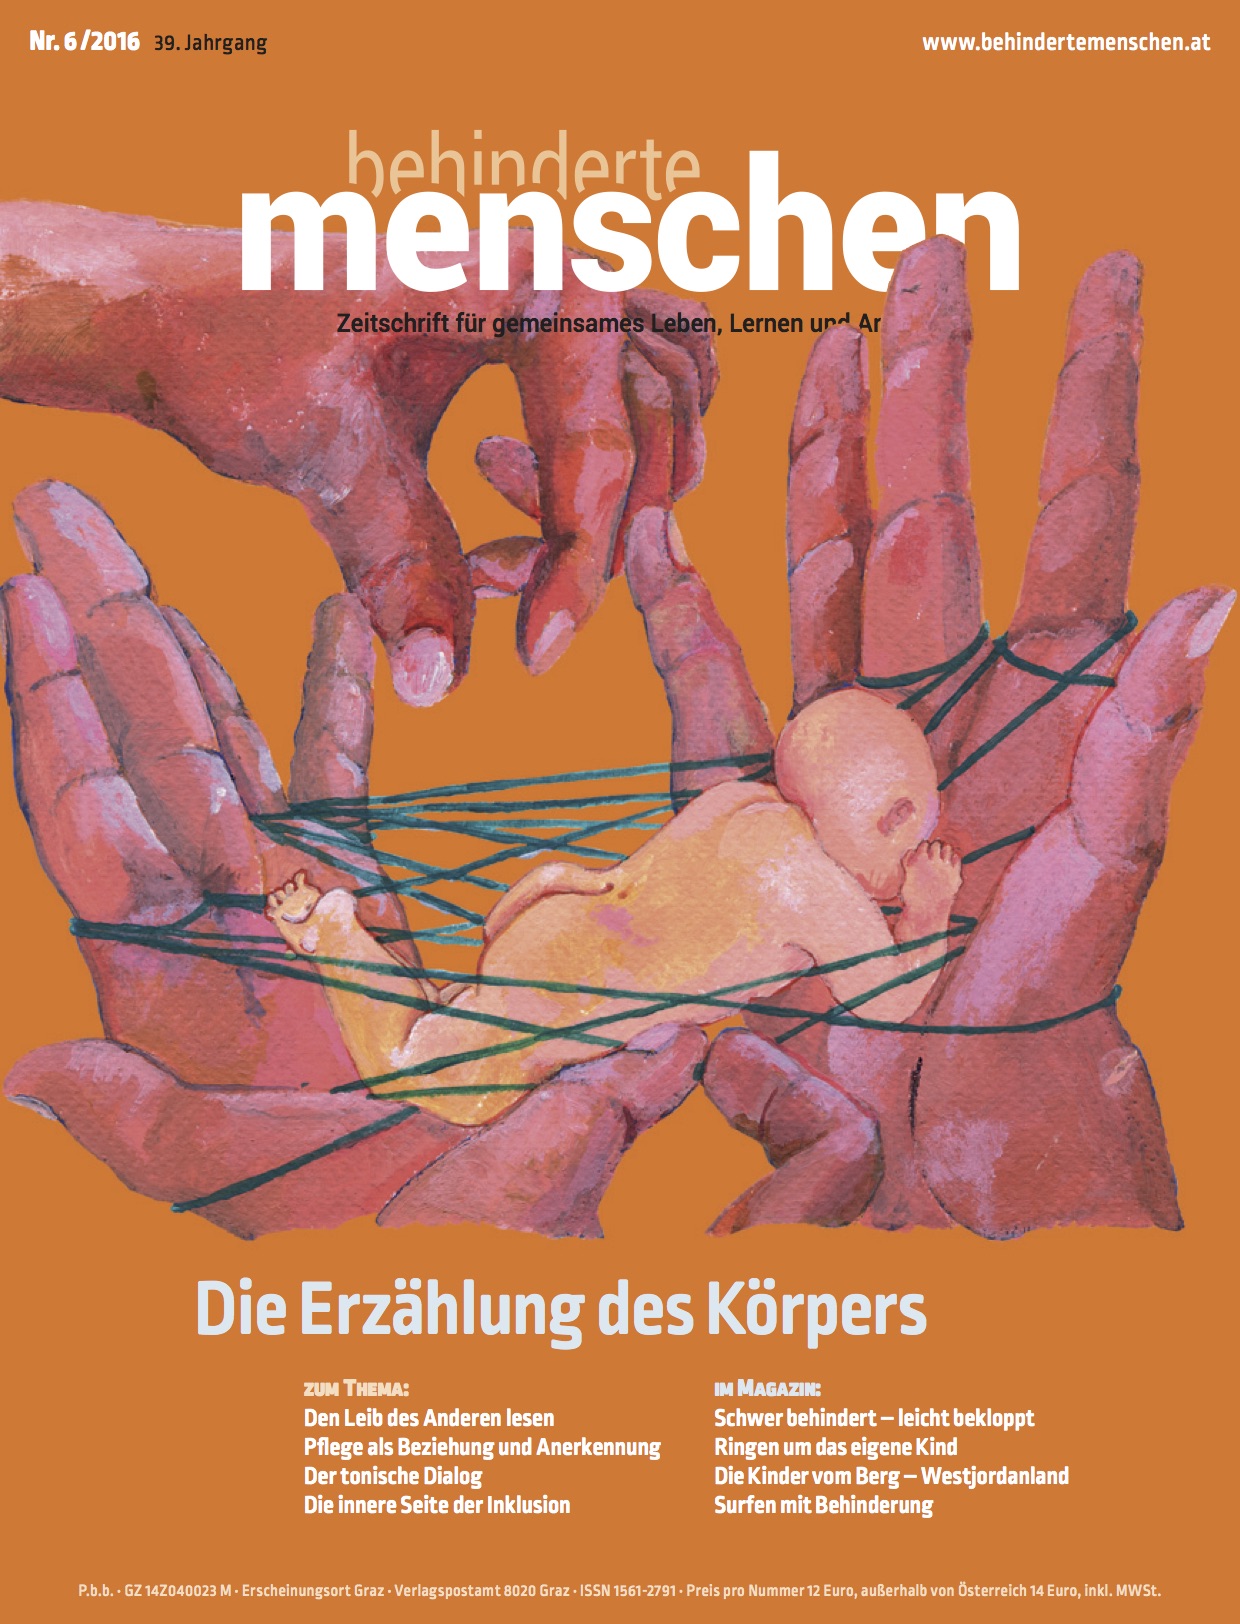 Titelbild der Zeitschrift BEHINDERTE MENSCHEN, Ausgabe 6/2016 "Die Erzählung des Körpers"